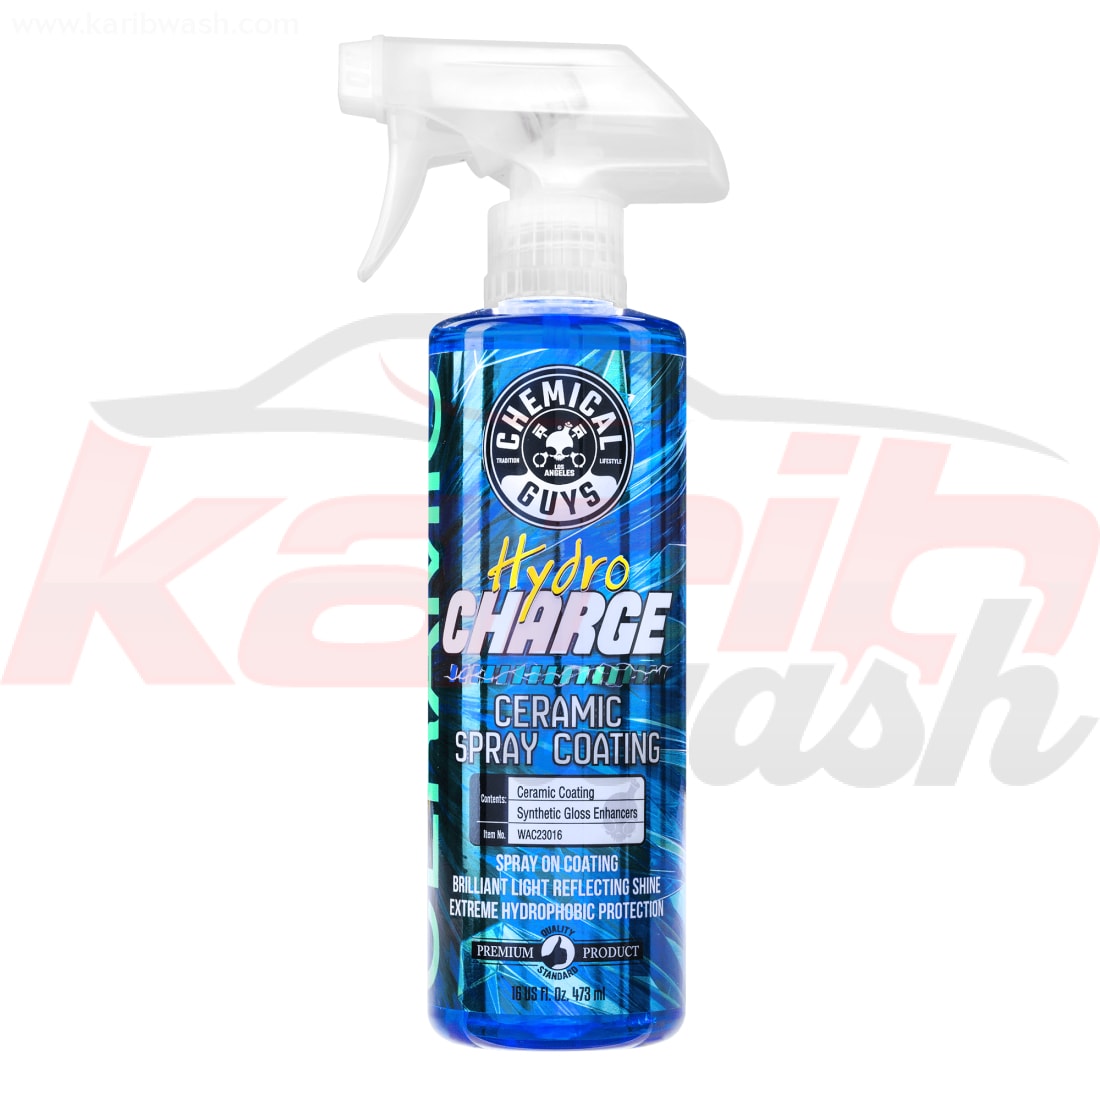 HydroCharge Ceramic Spray Coating (16 oz) - CHEMICAL GUYS - KARIBWASH